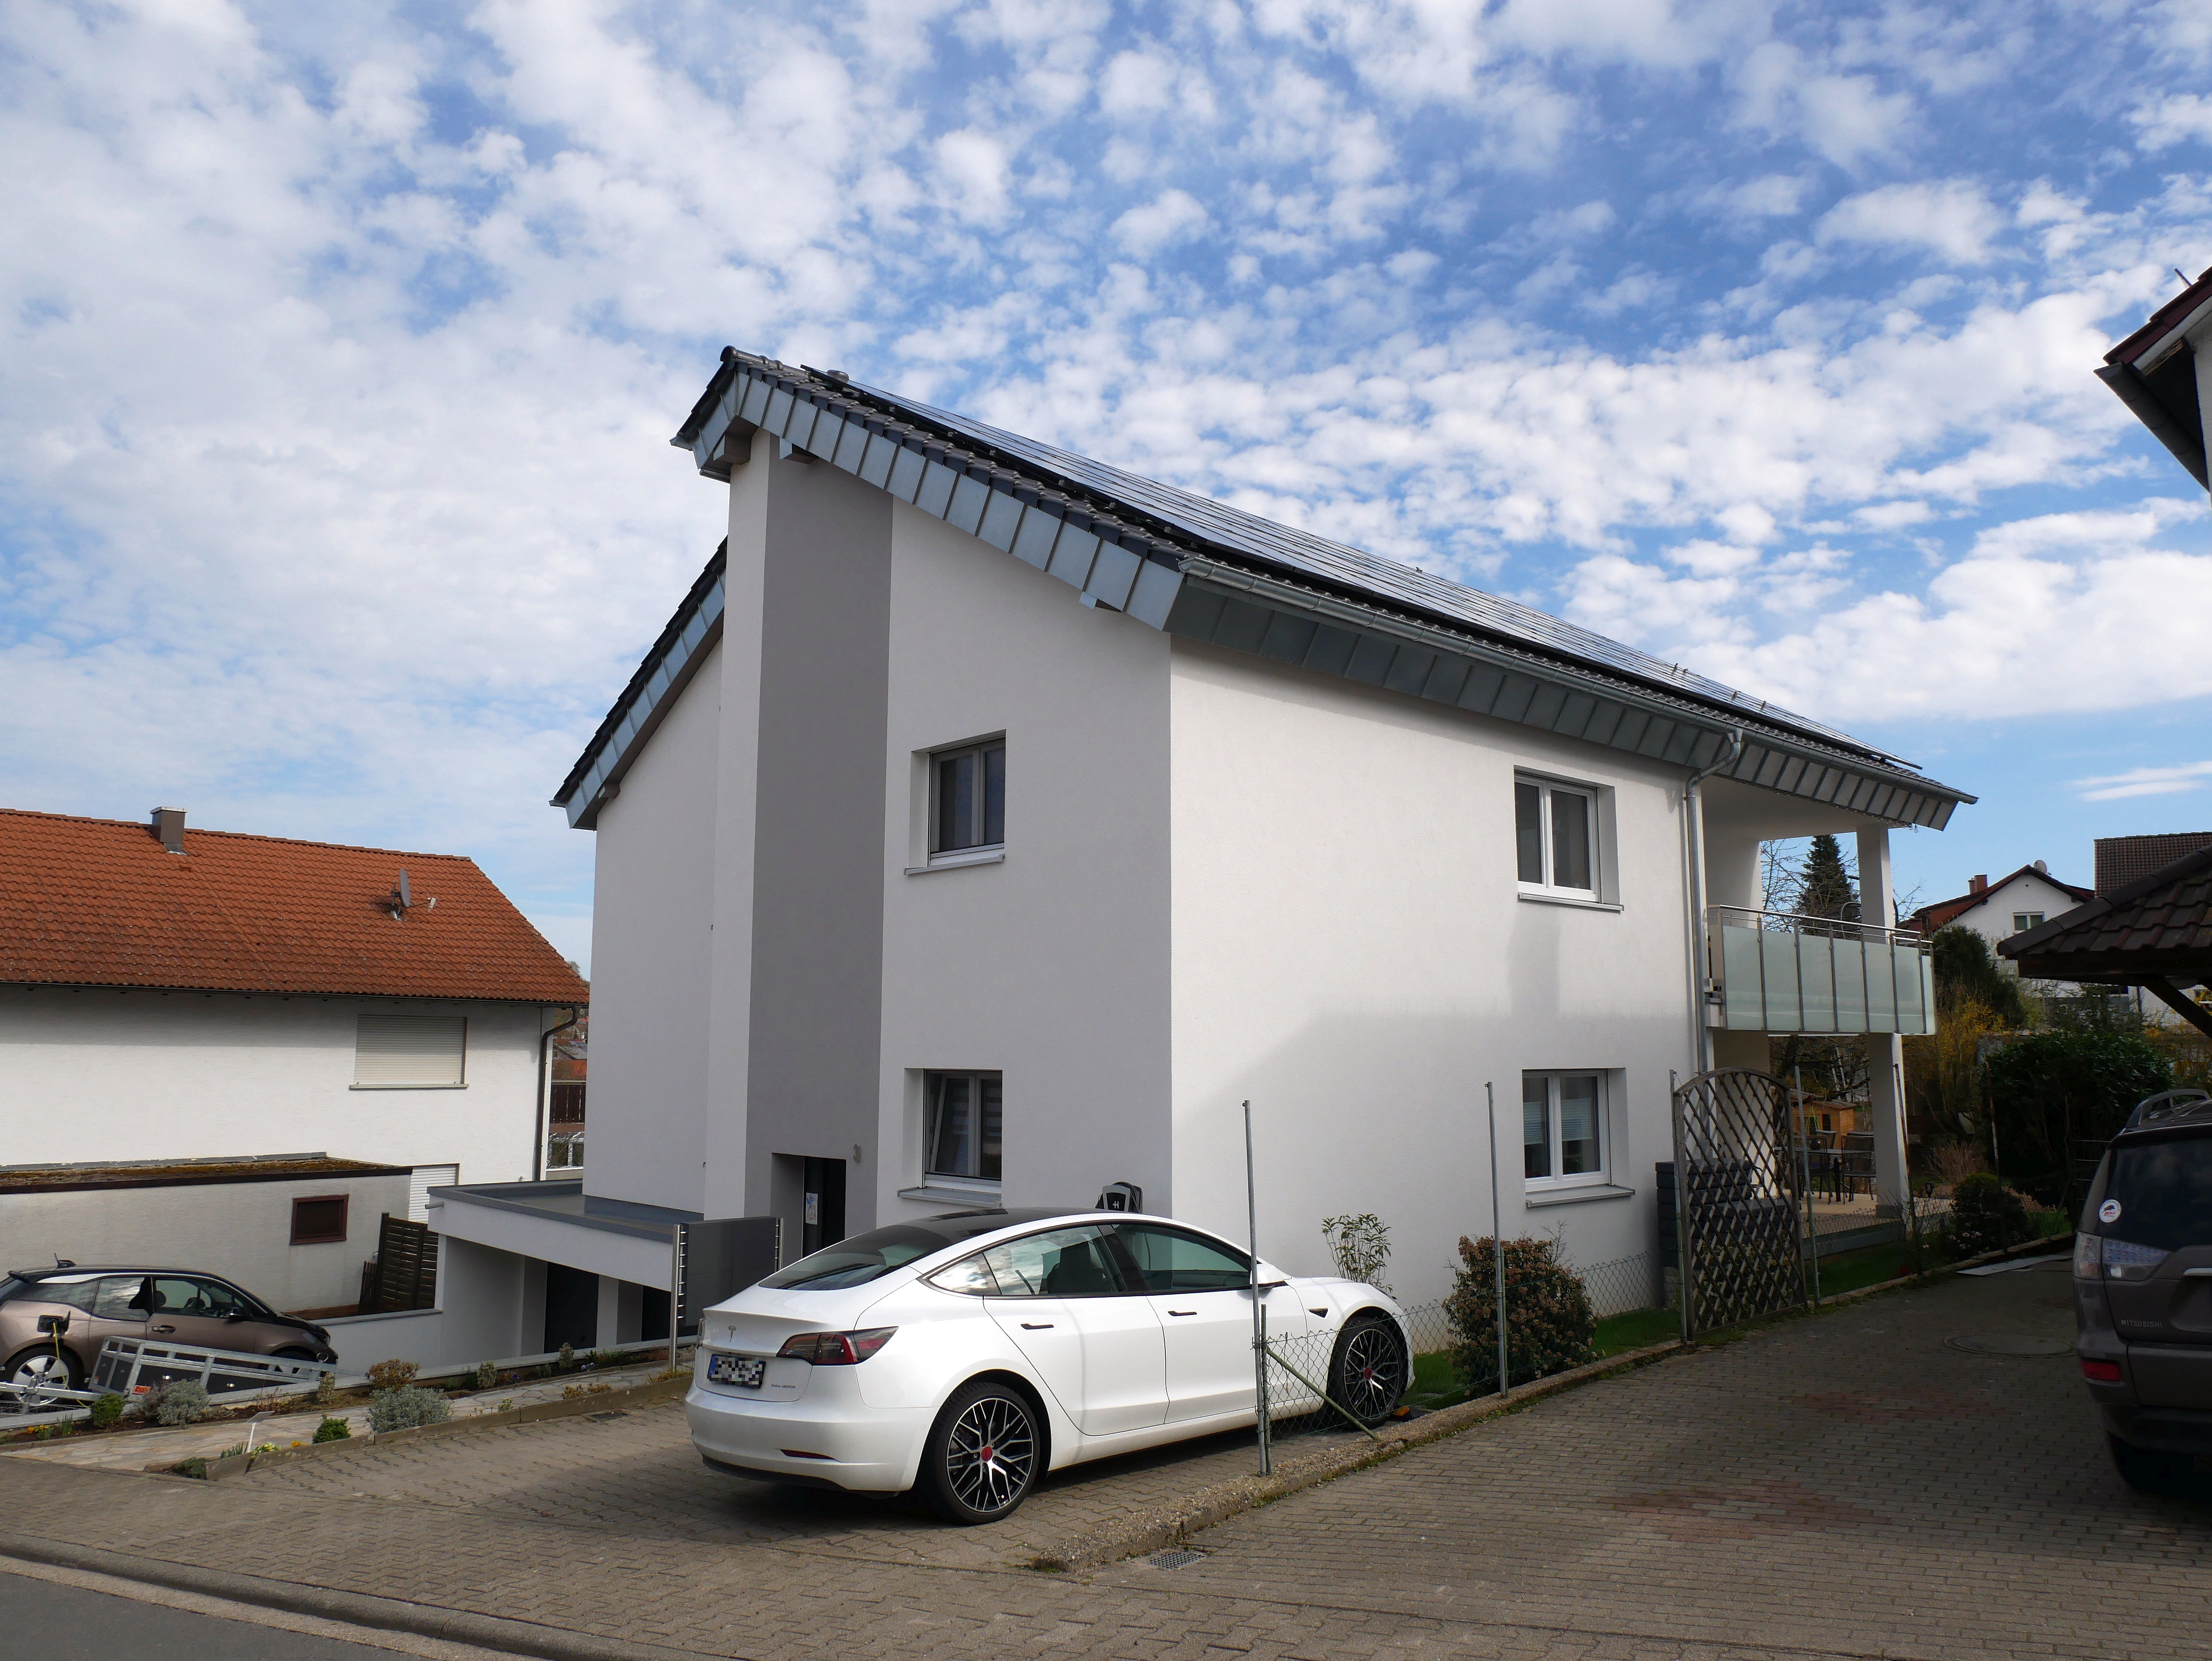 
    
            
                    Das Zweifamilienhaus aus 80er Jahren in Dielheim wurde umfassend saniert und gedämmt. Das Dach erhielt eine 18 cm dicke Aufdachdämmung mit PU-Hartschaum sowie eine 16 Zentimeter starke Zwischensparrendämmung aus Mineralfaser
                
        
